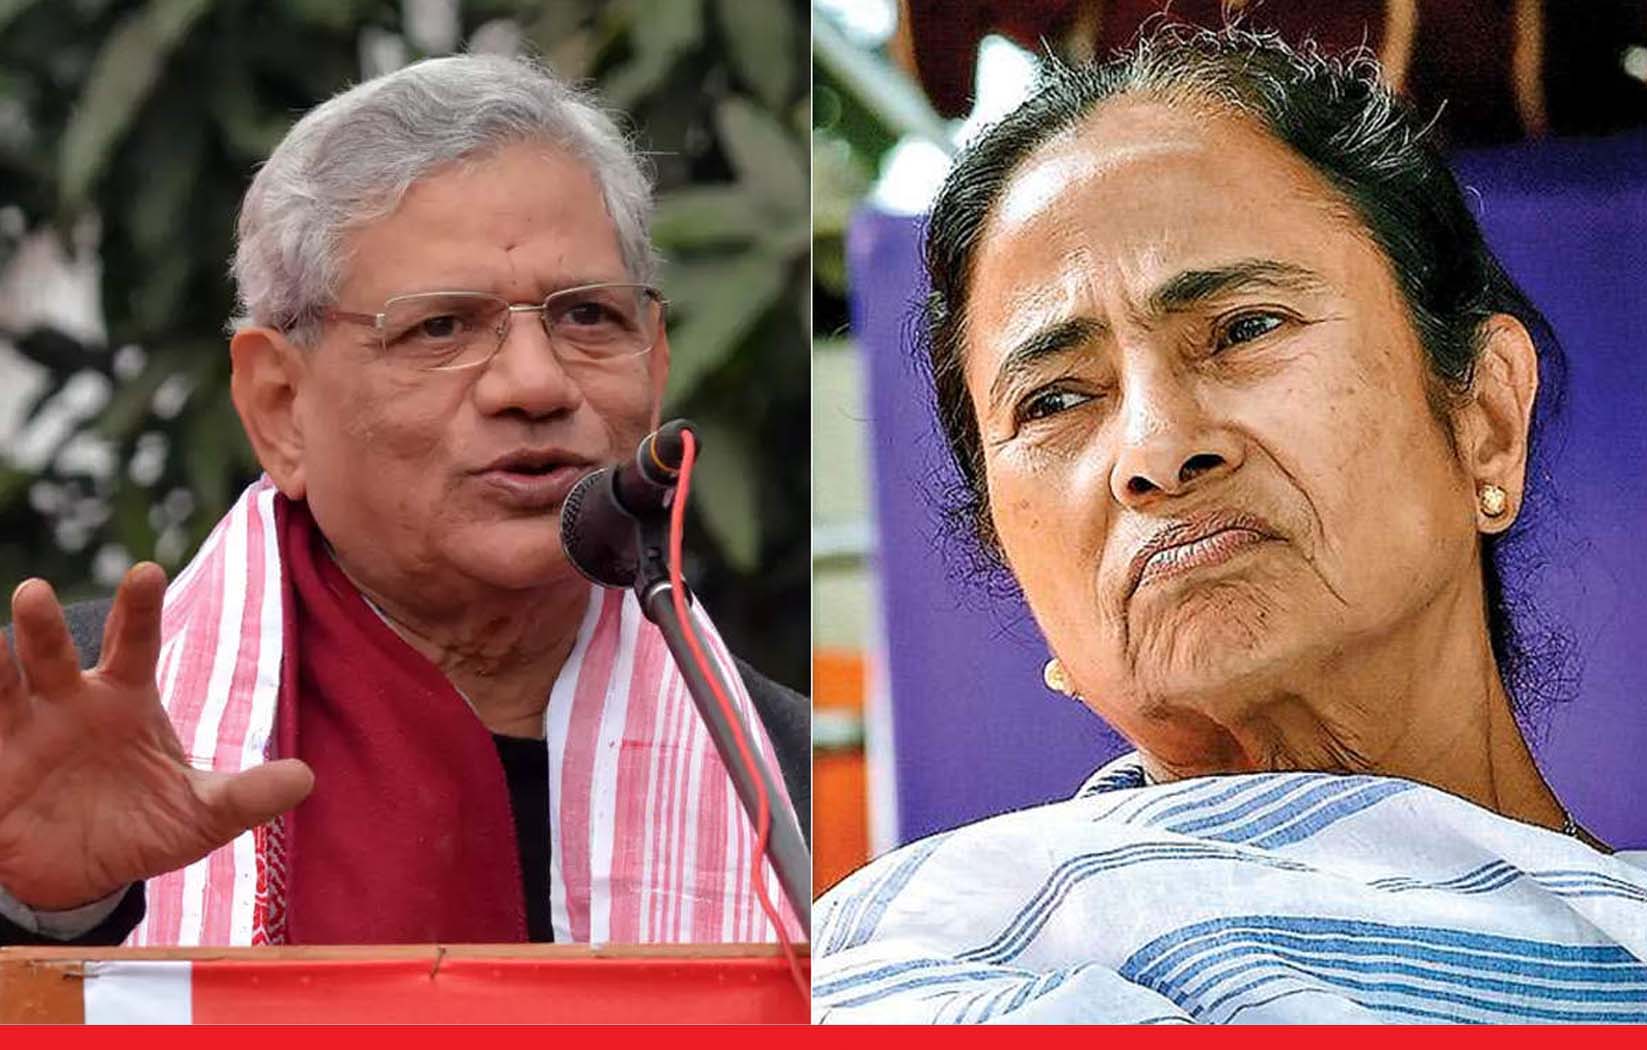 राष्ट्रपति चुनाव: येचुरी और डी राजा ने ममता को दिया झटका, कहा- ऐसे मीटिंग बुलाना ठीक नहीं